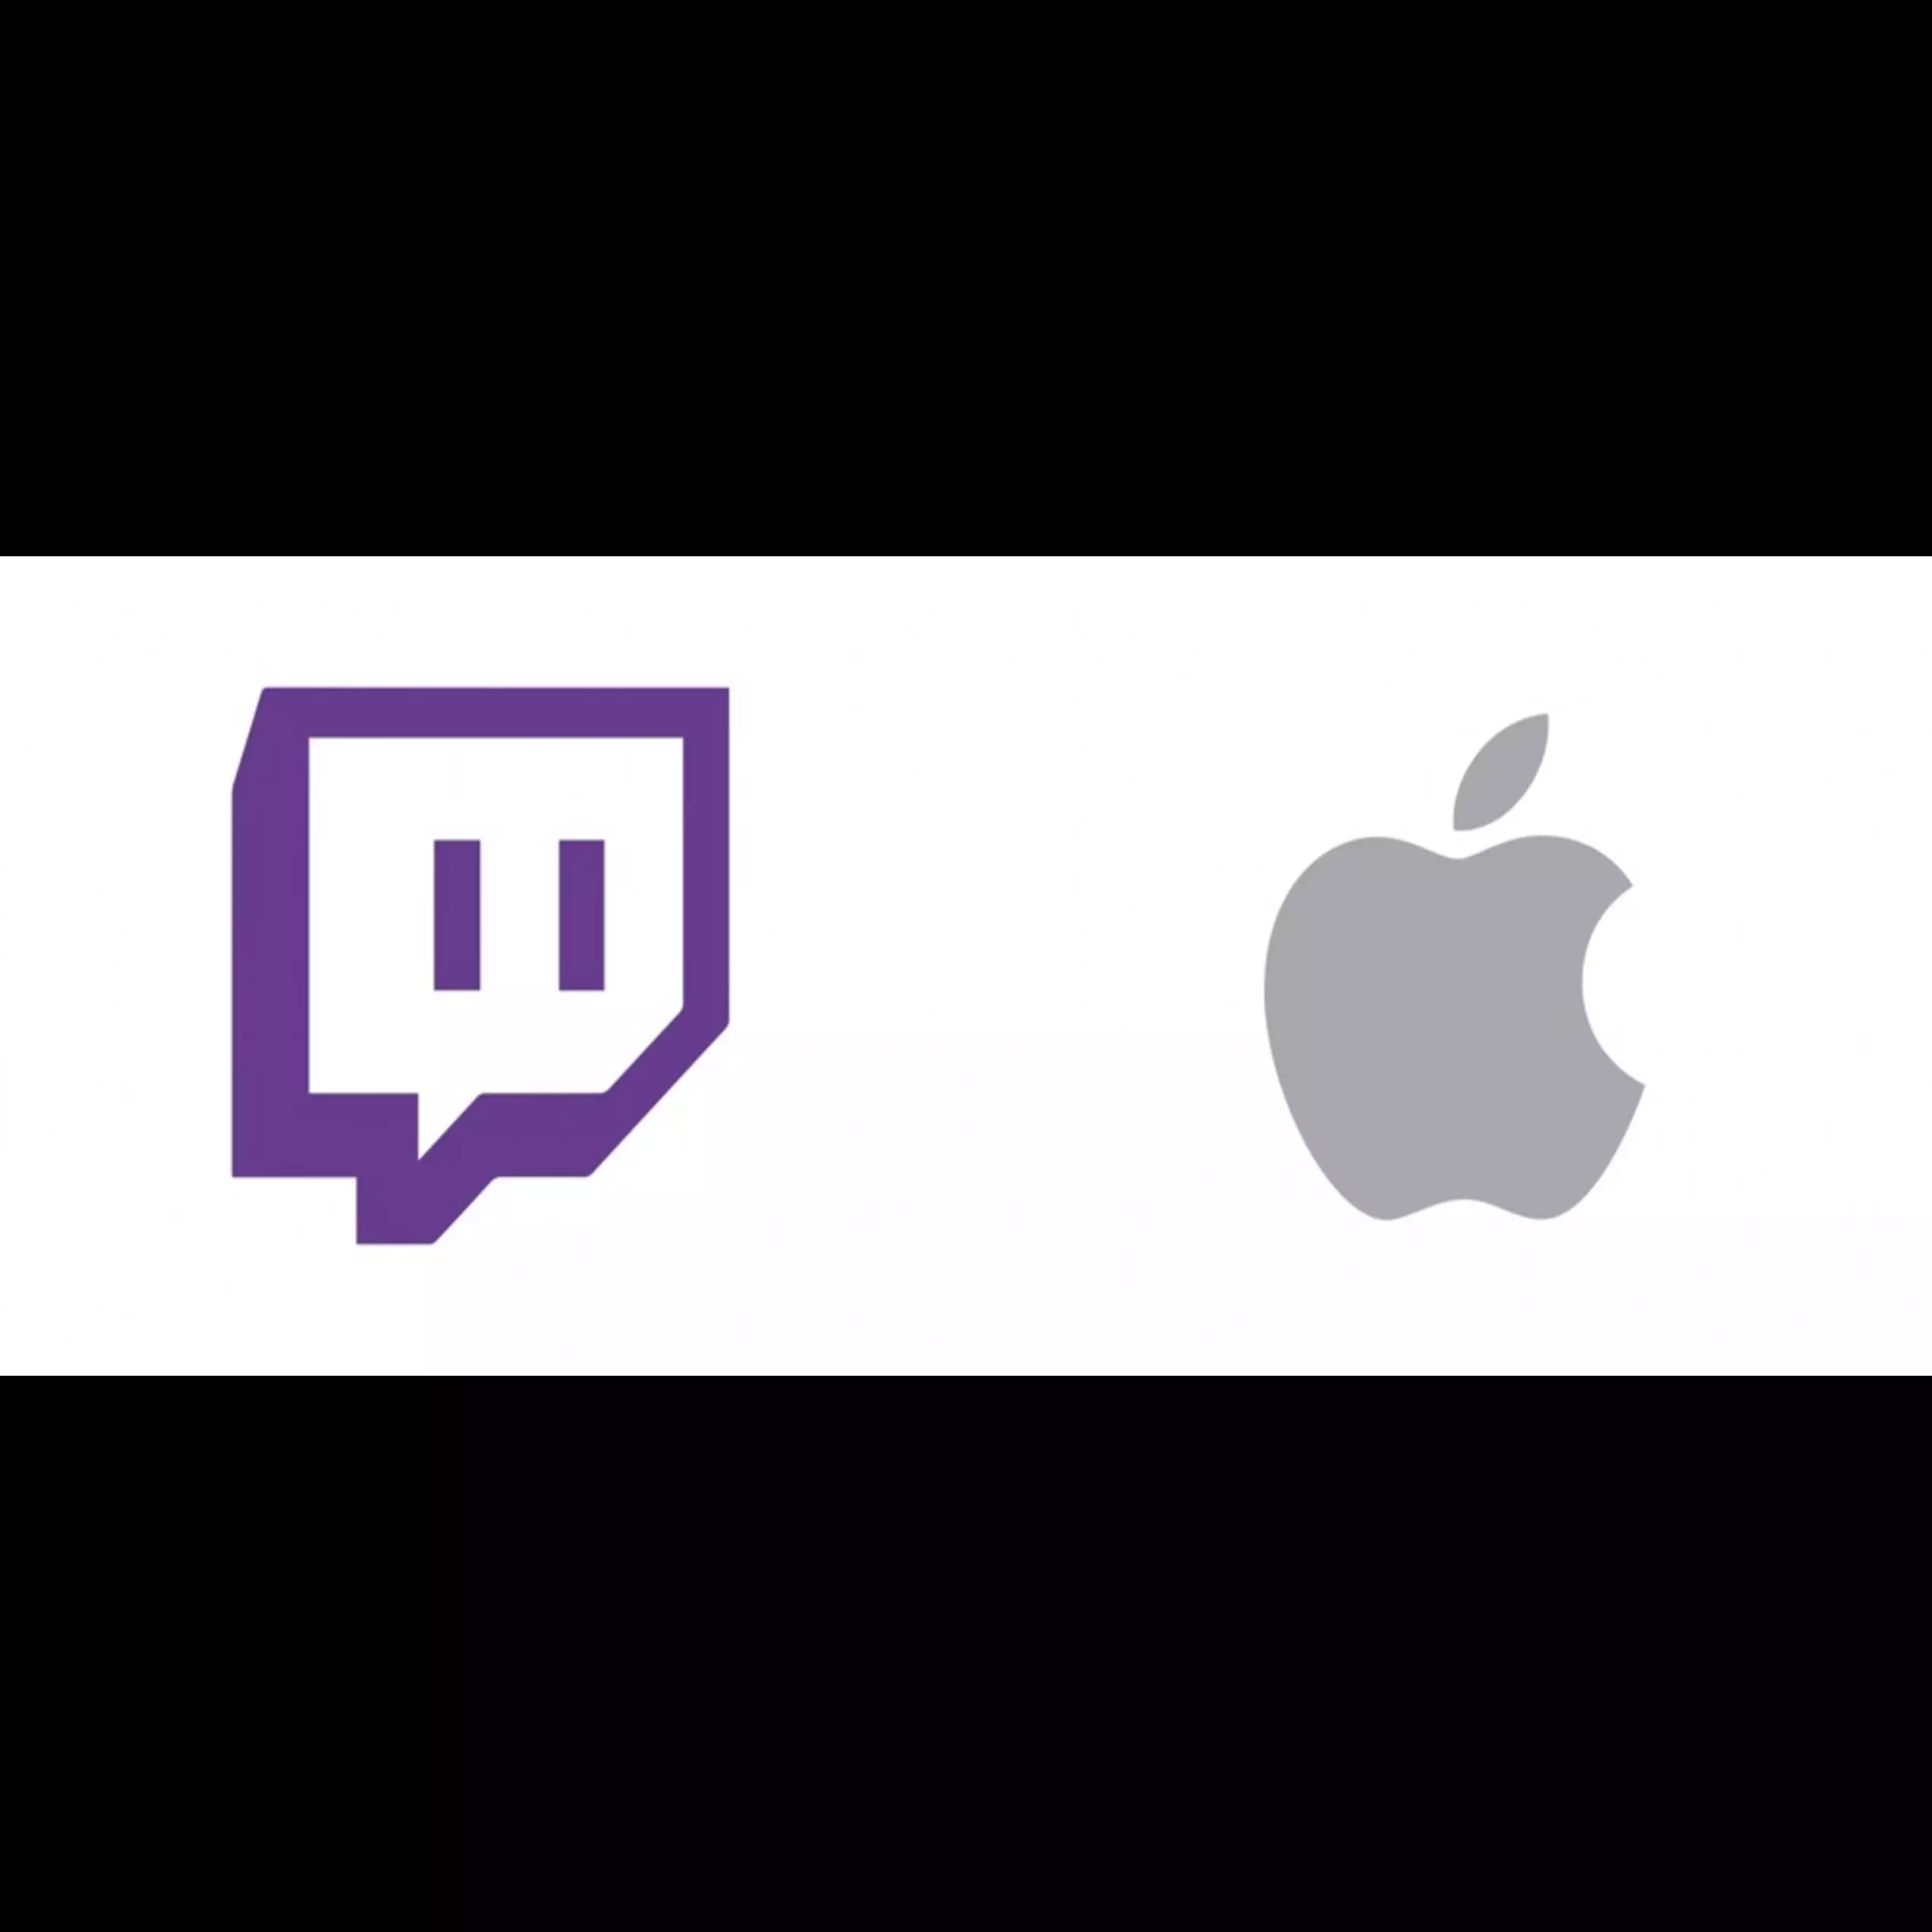 Kini Twitch mendukung nobar streaming dengan Apple SharePlay